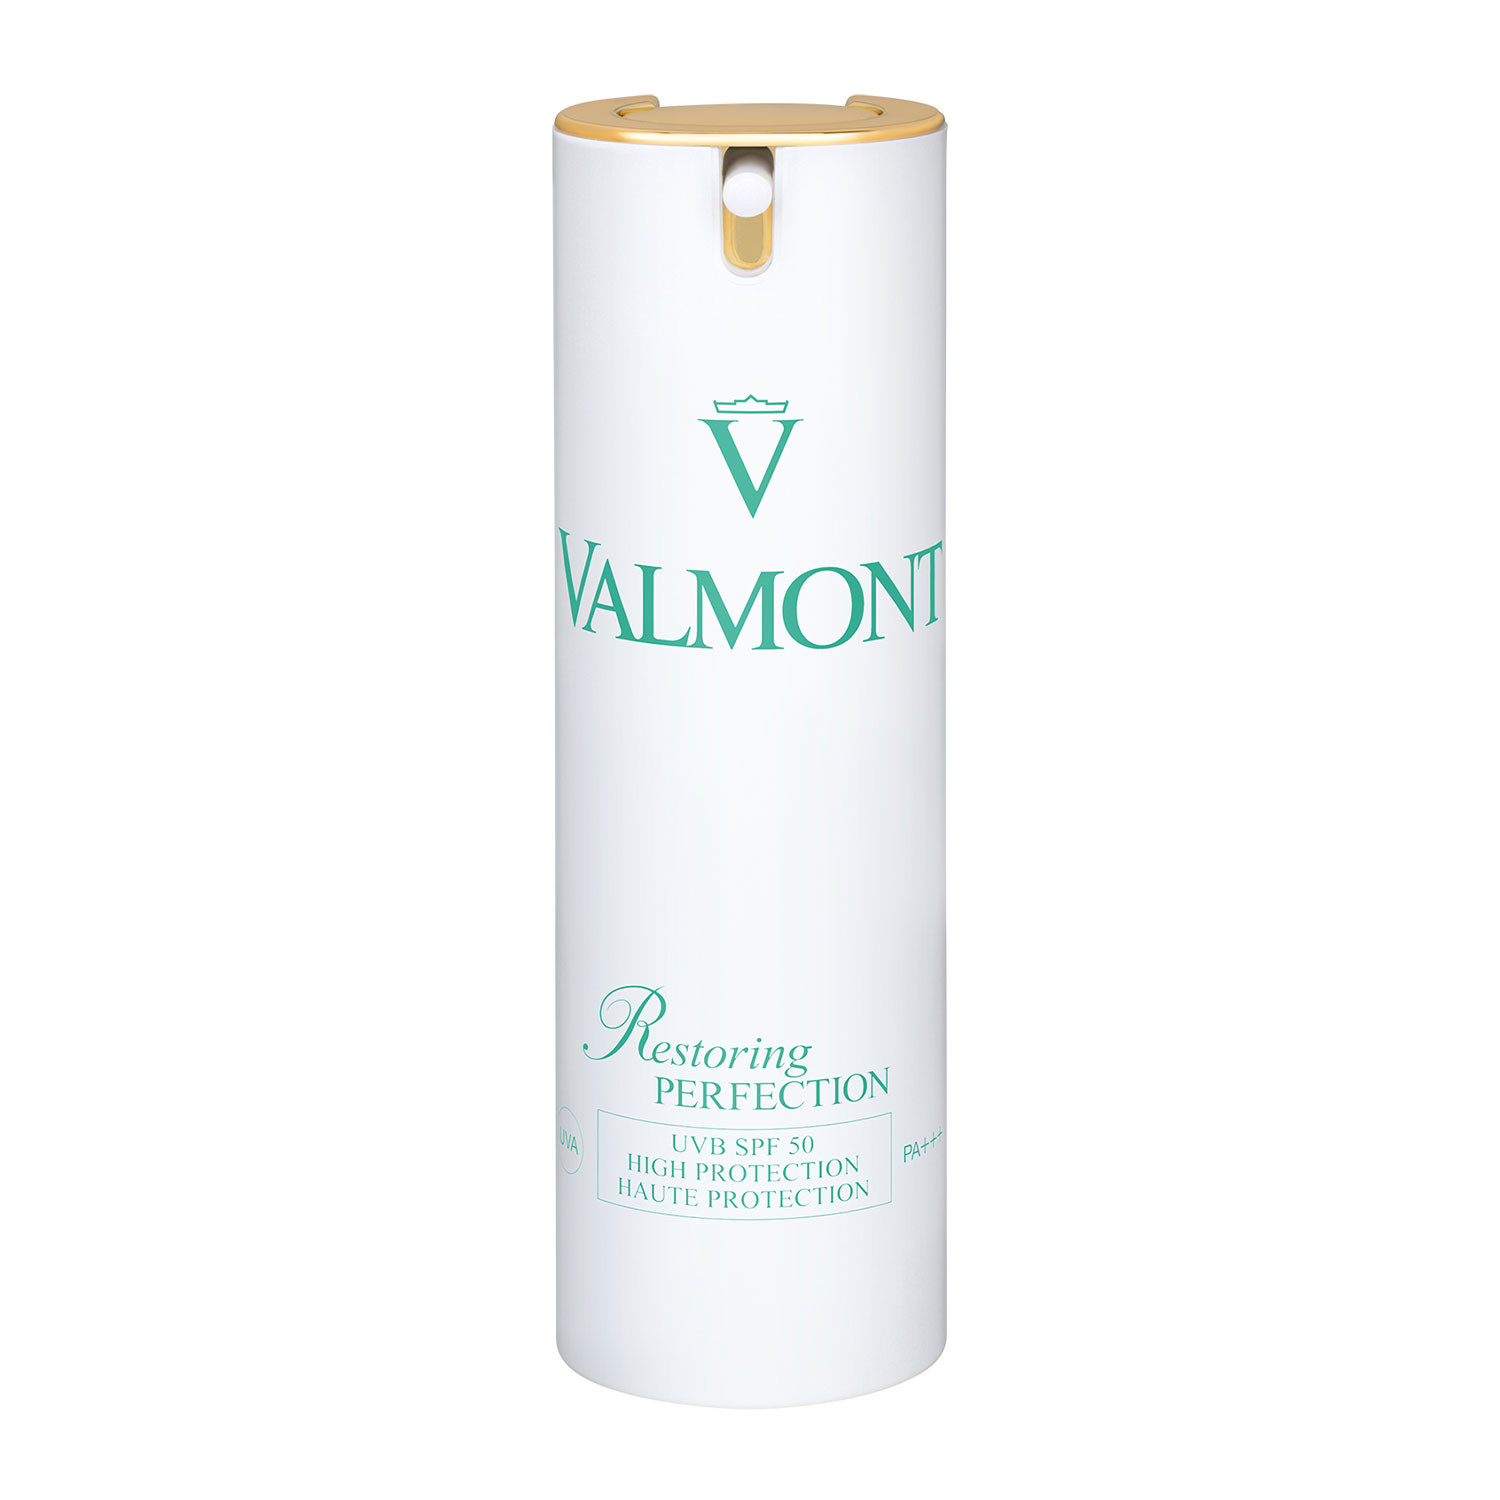 Отзывы о Valmont Restoring Perfection SPF 50 - Крем «Восстанавливающее преимущество»